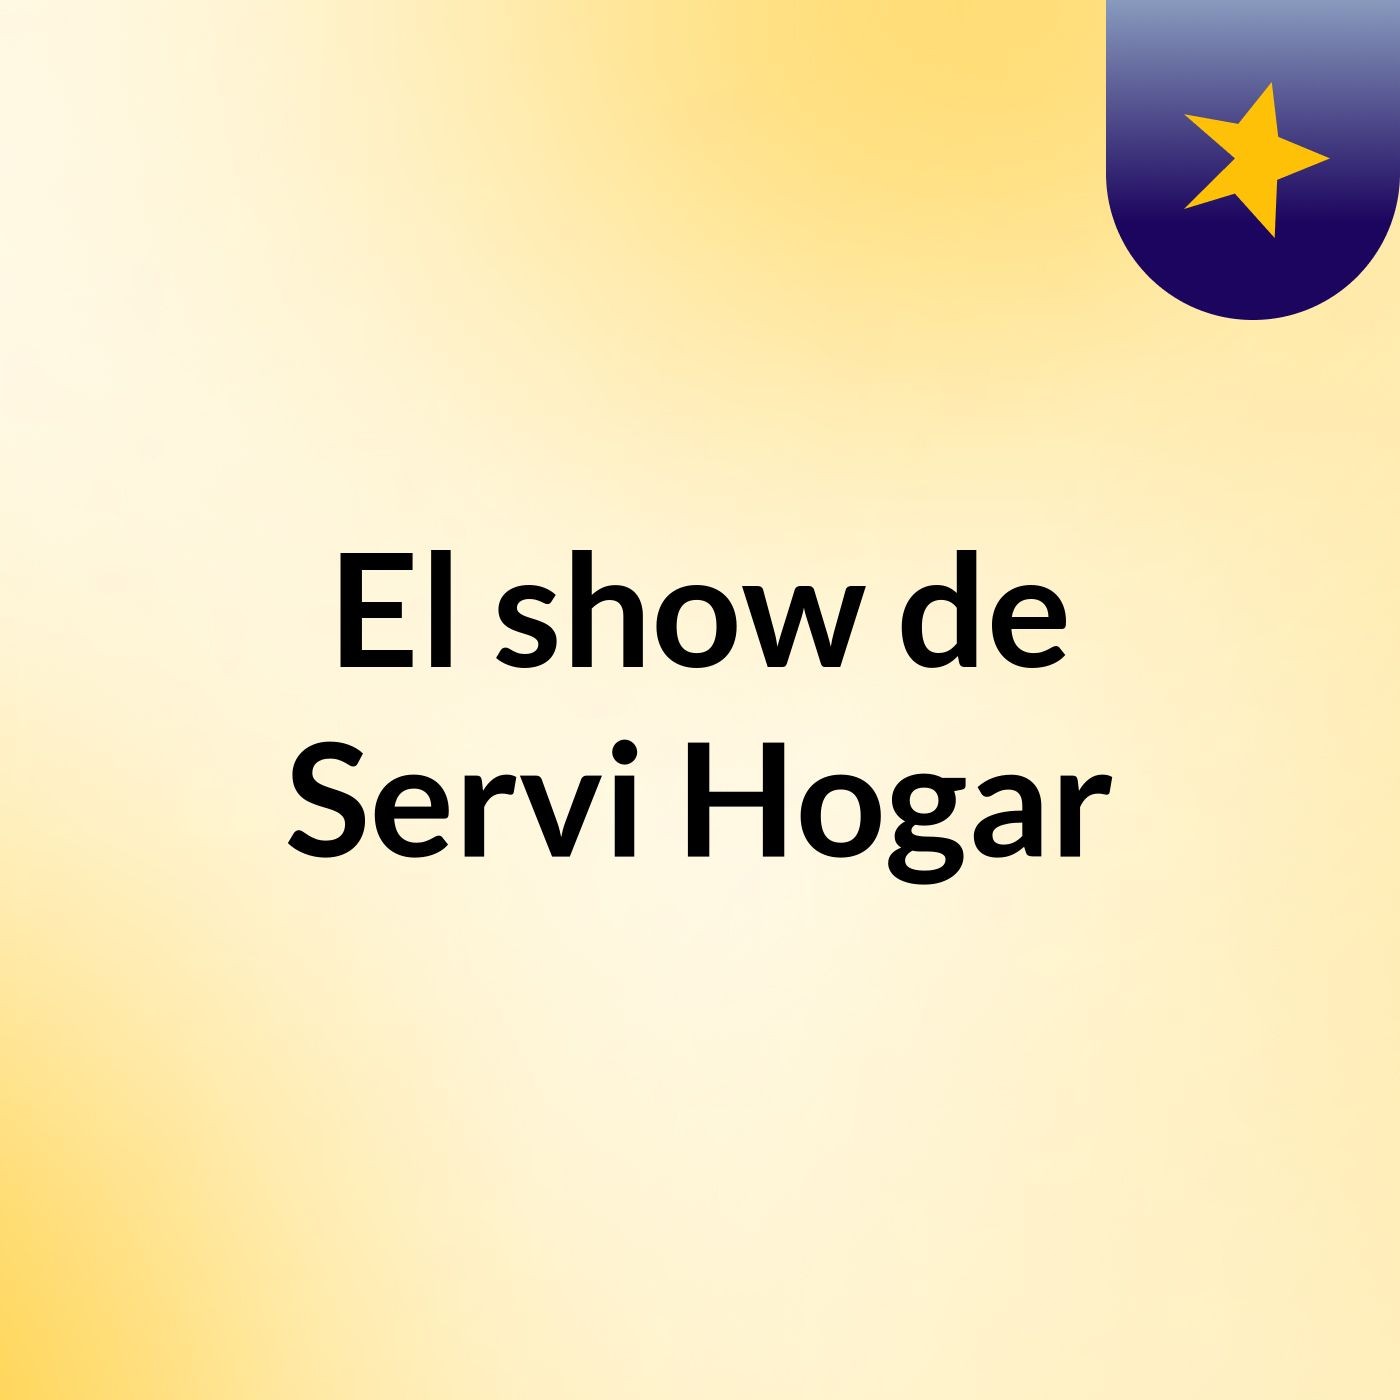 El show de Servi Hogar